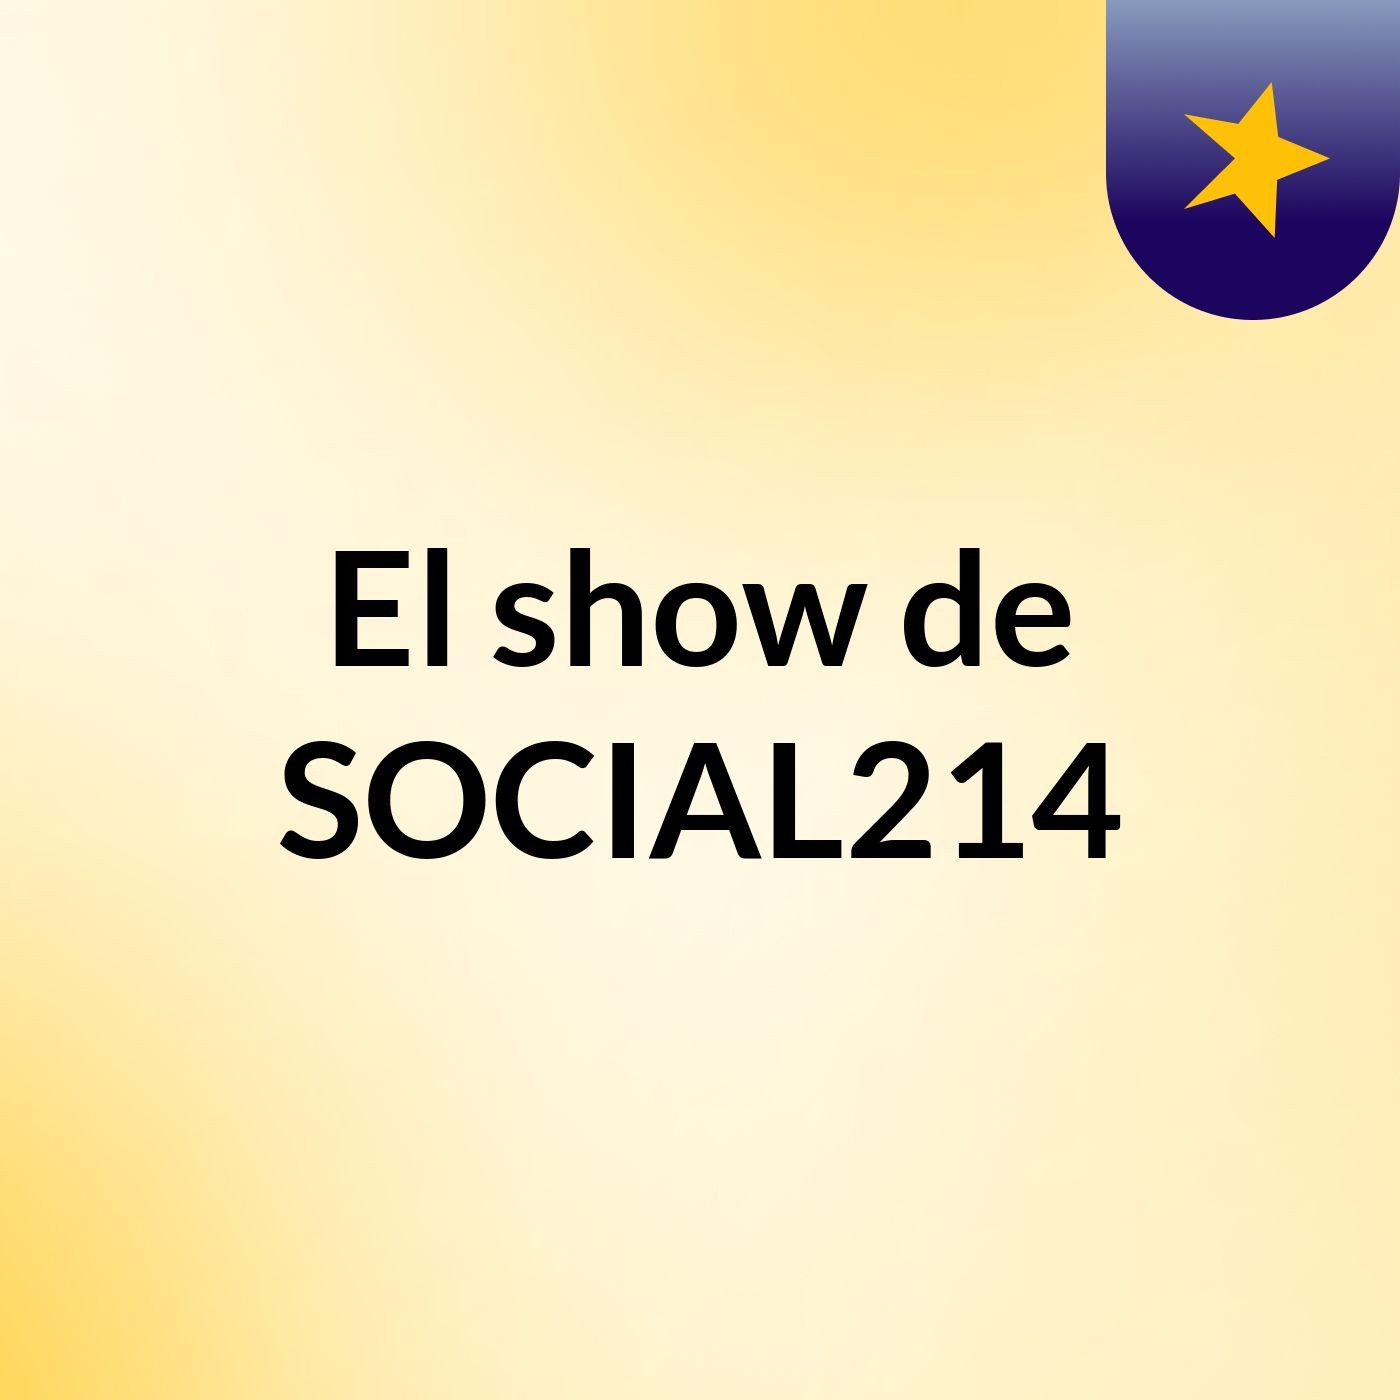 Episodio 6 - El show de SOCIAL214